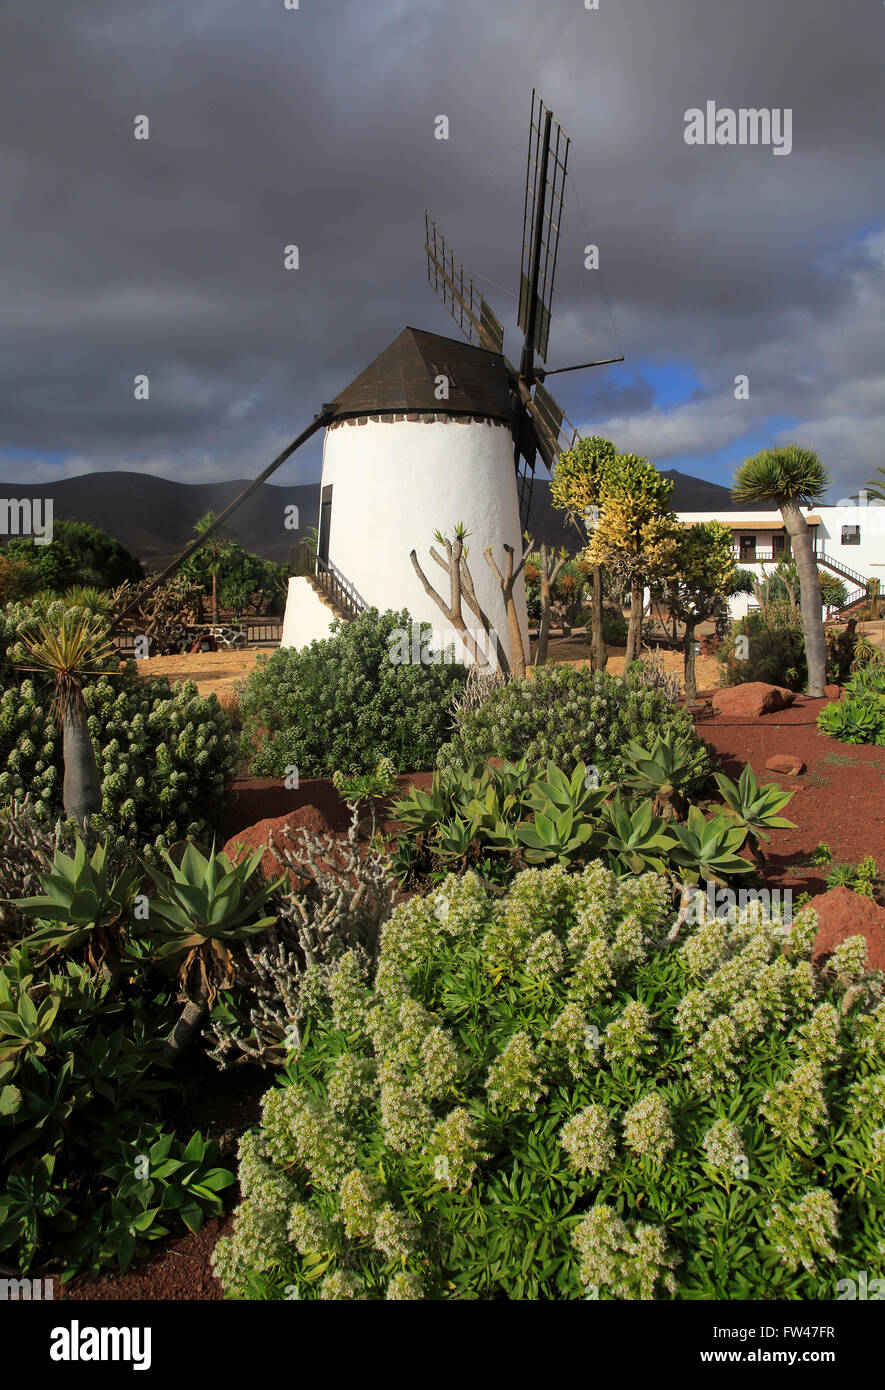 Windmill and garden at Centro de Artesania Molinos de Antigua, Fuerteventura, Canary Islands, Spain Stock Photo